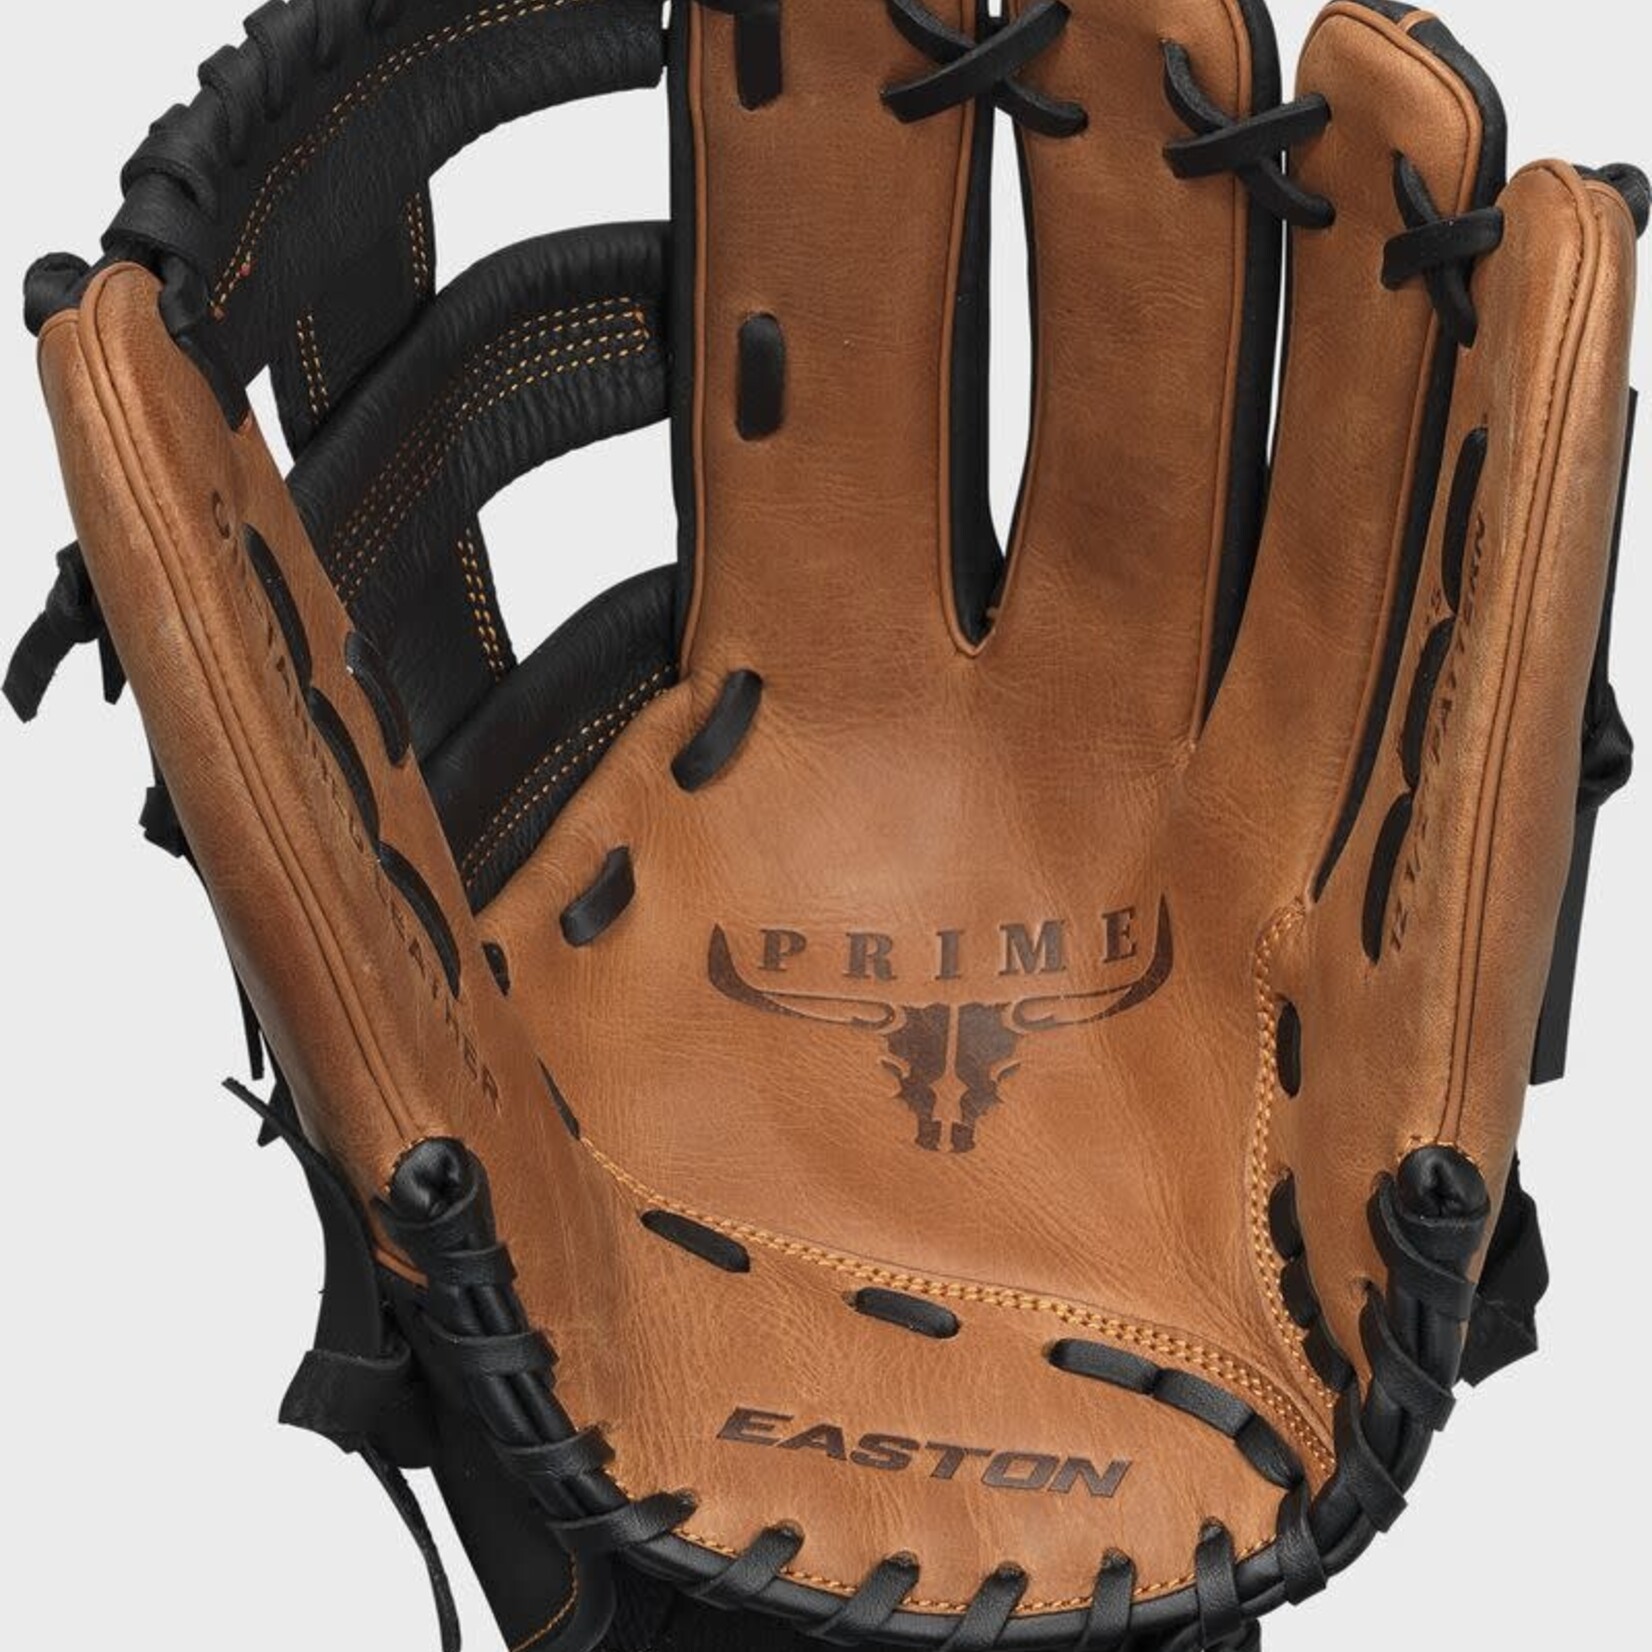 Easton Easton Baseball Glove, Prime Slowpitch Series, PSP125, 12.5”, Reg